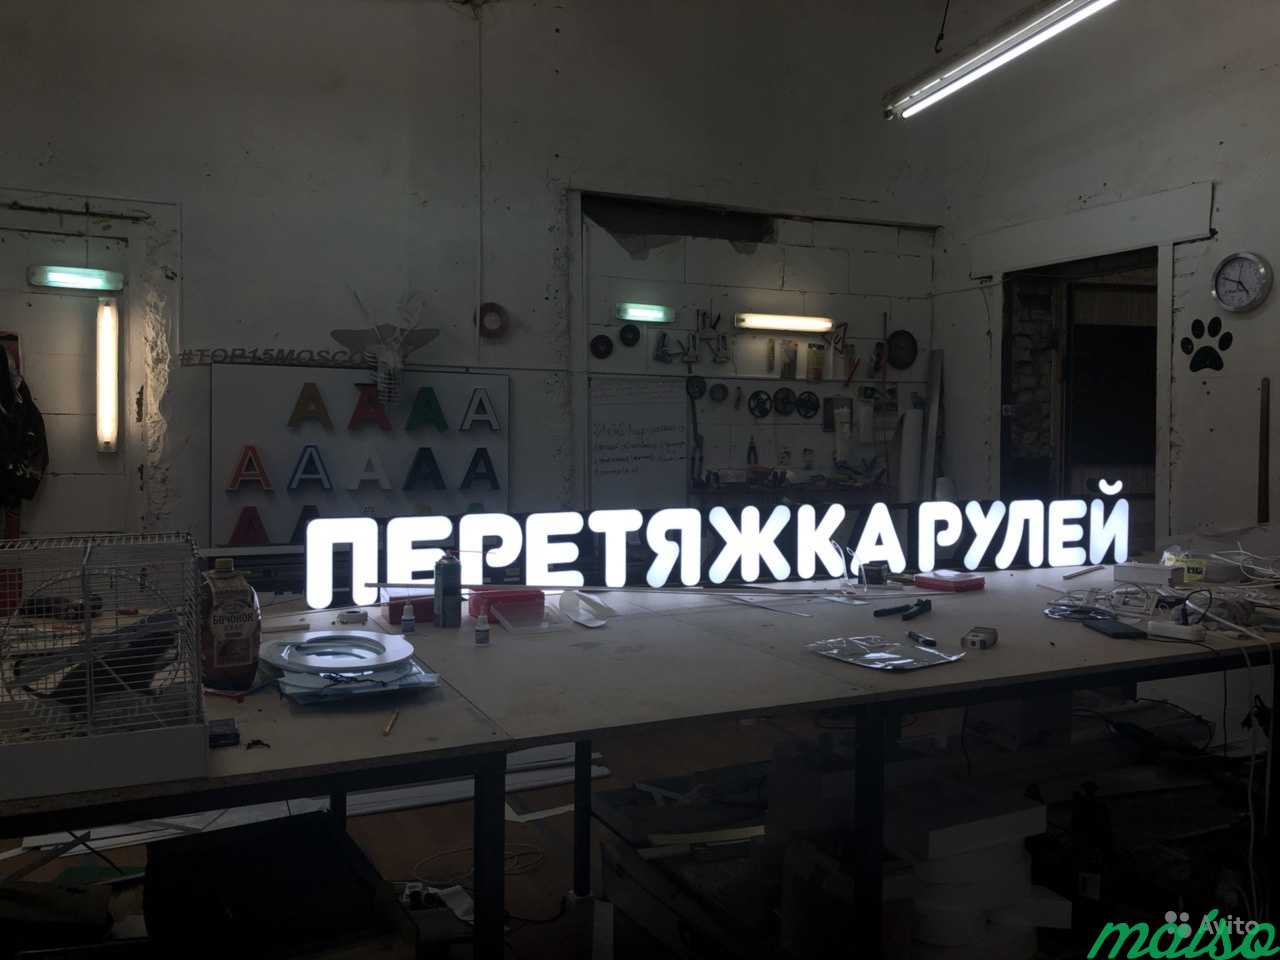 Вывески, объемные буквы, наружная реклама в Москве. Фото 9